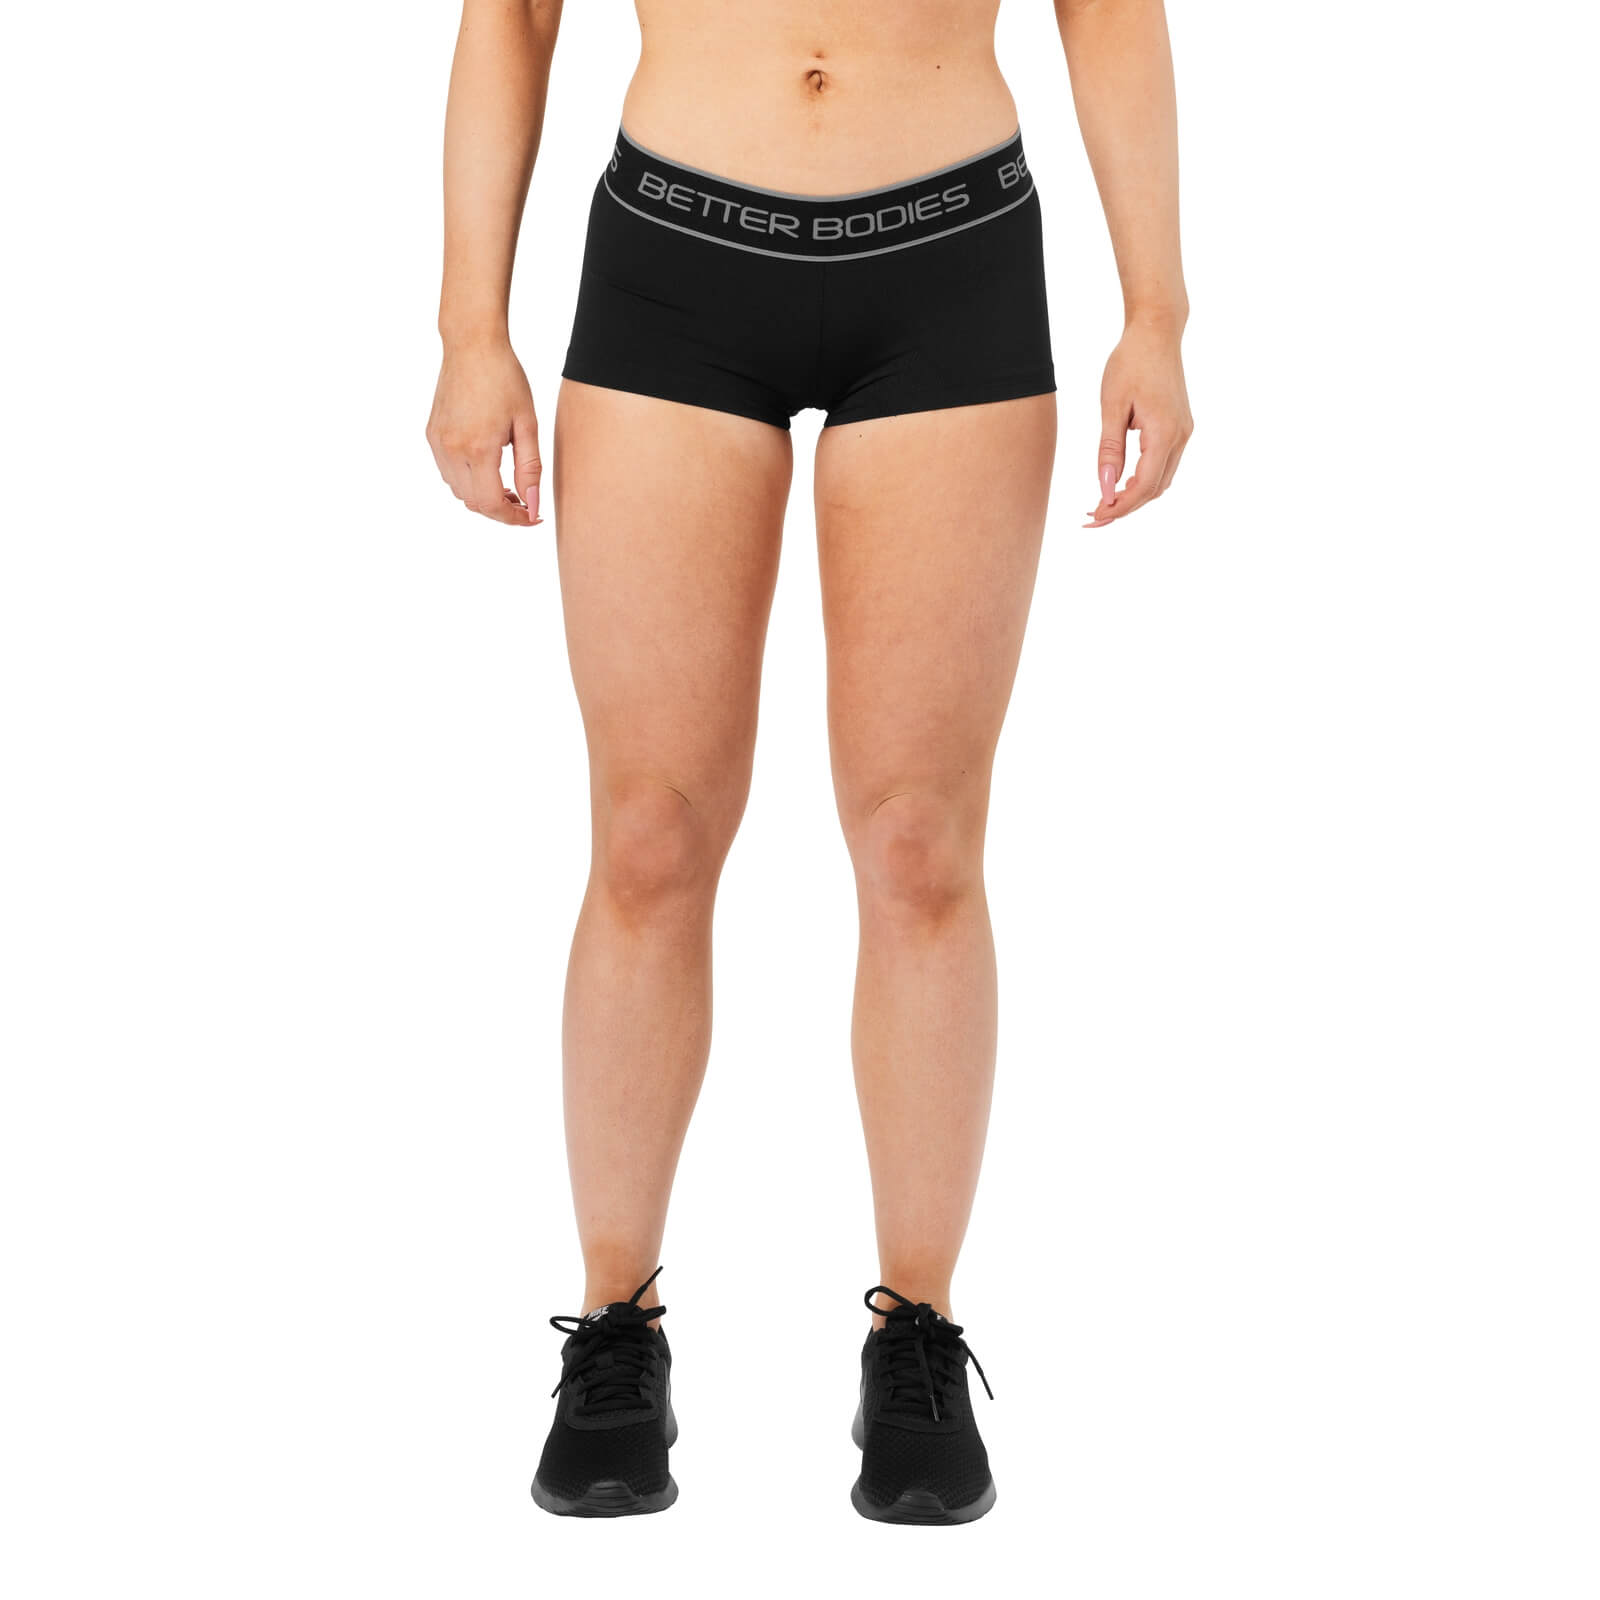 Kolla in Fitness Hotpant, black, Better Bodies hos SportGymButiken.se